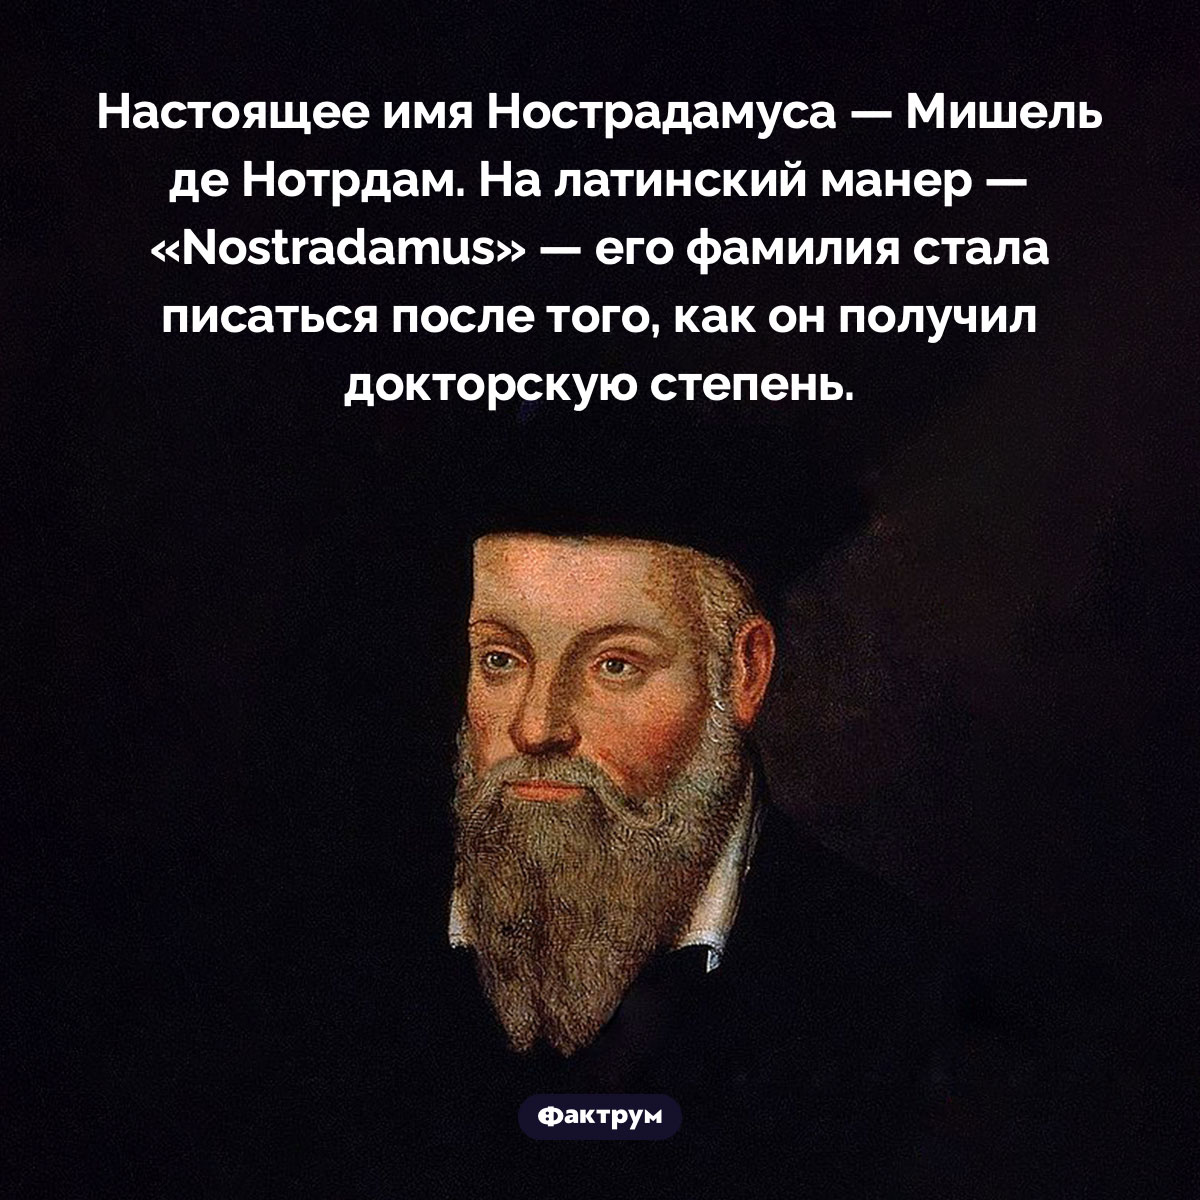 Как Мишель стал Нострадамусом. Настоящее имя Нострадамуса — Мишель де Нотрдам. На латинский манер — «Nostradamus» — его фамилия стала писаться после того, как он получил докторскую степень.